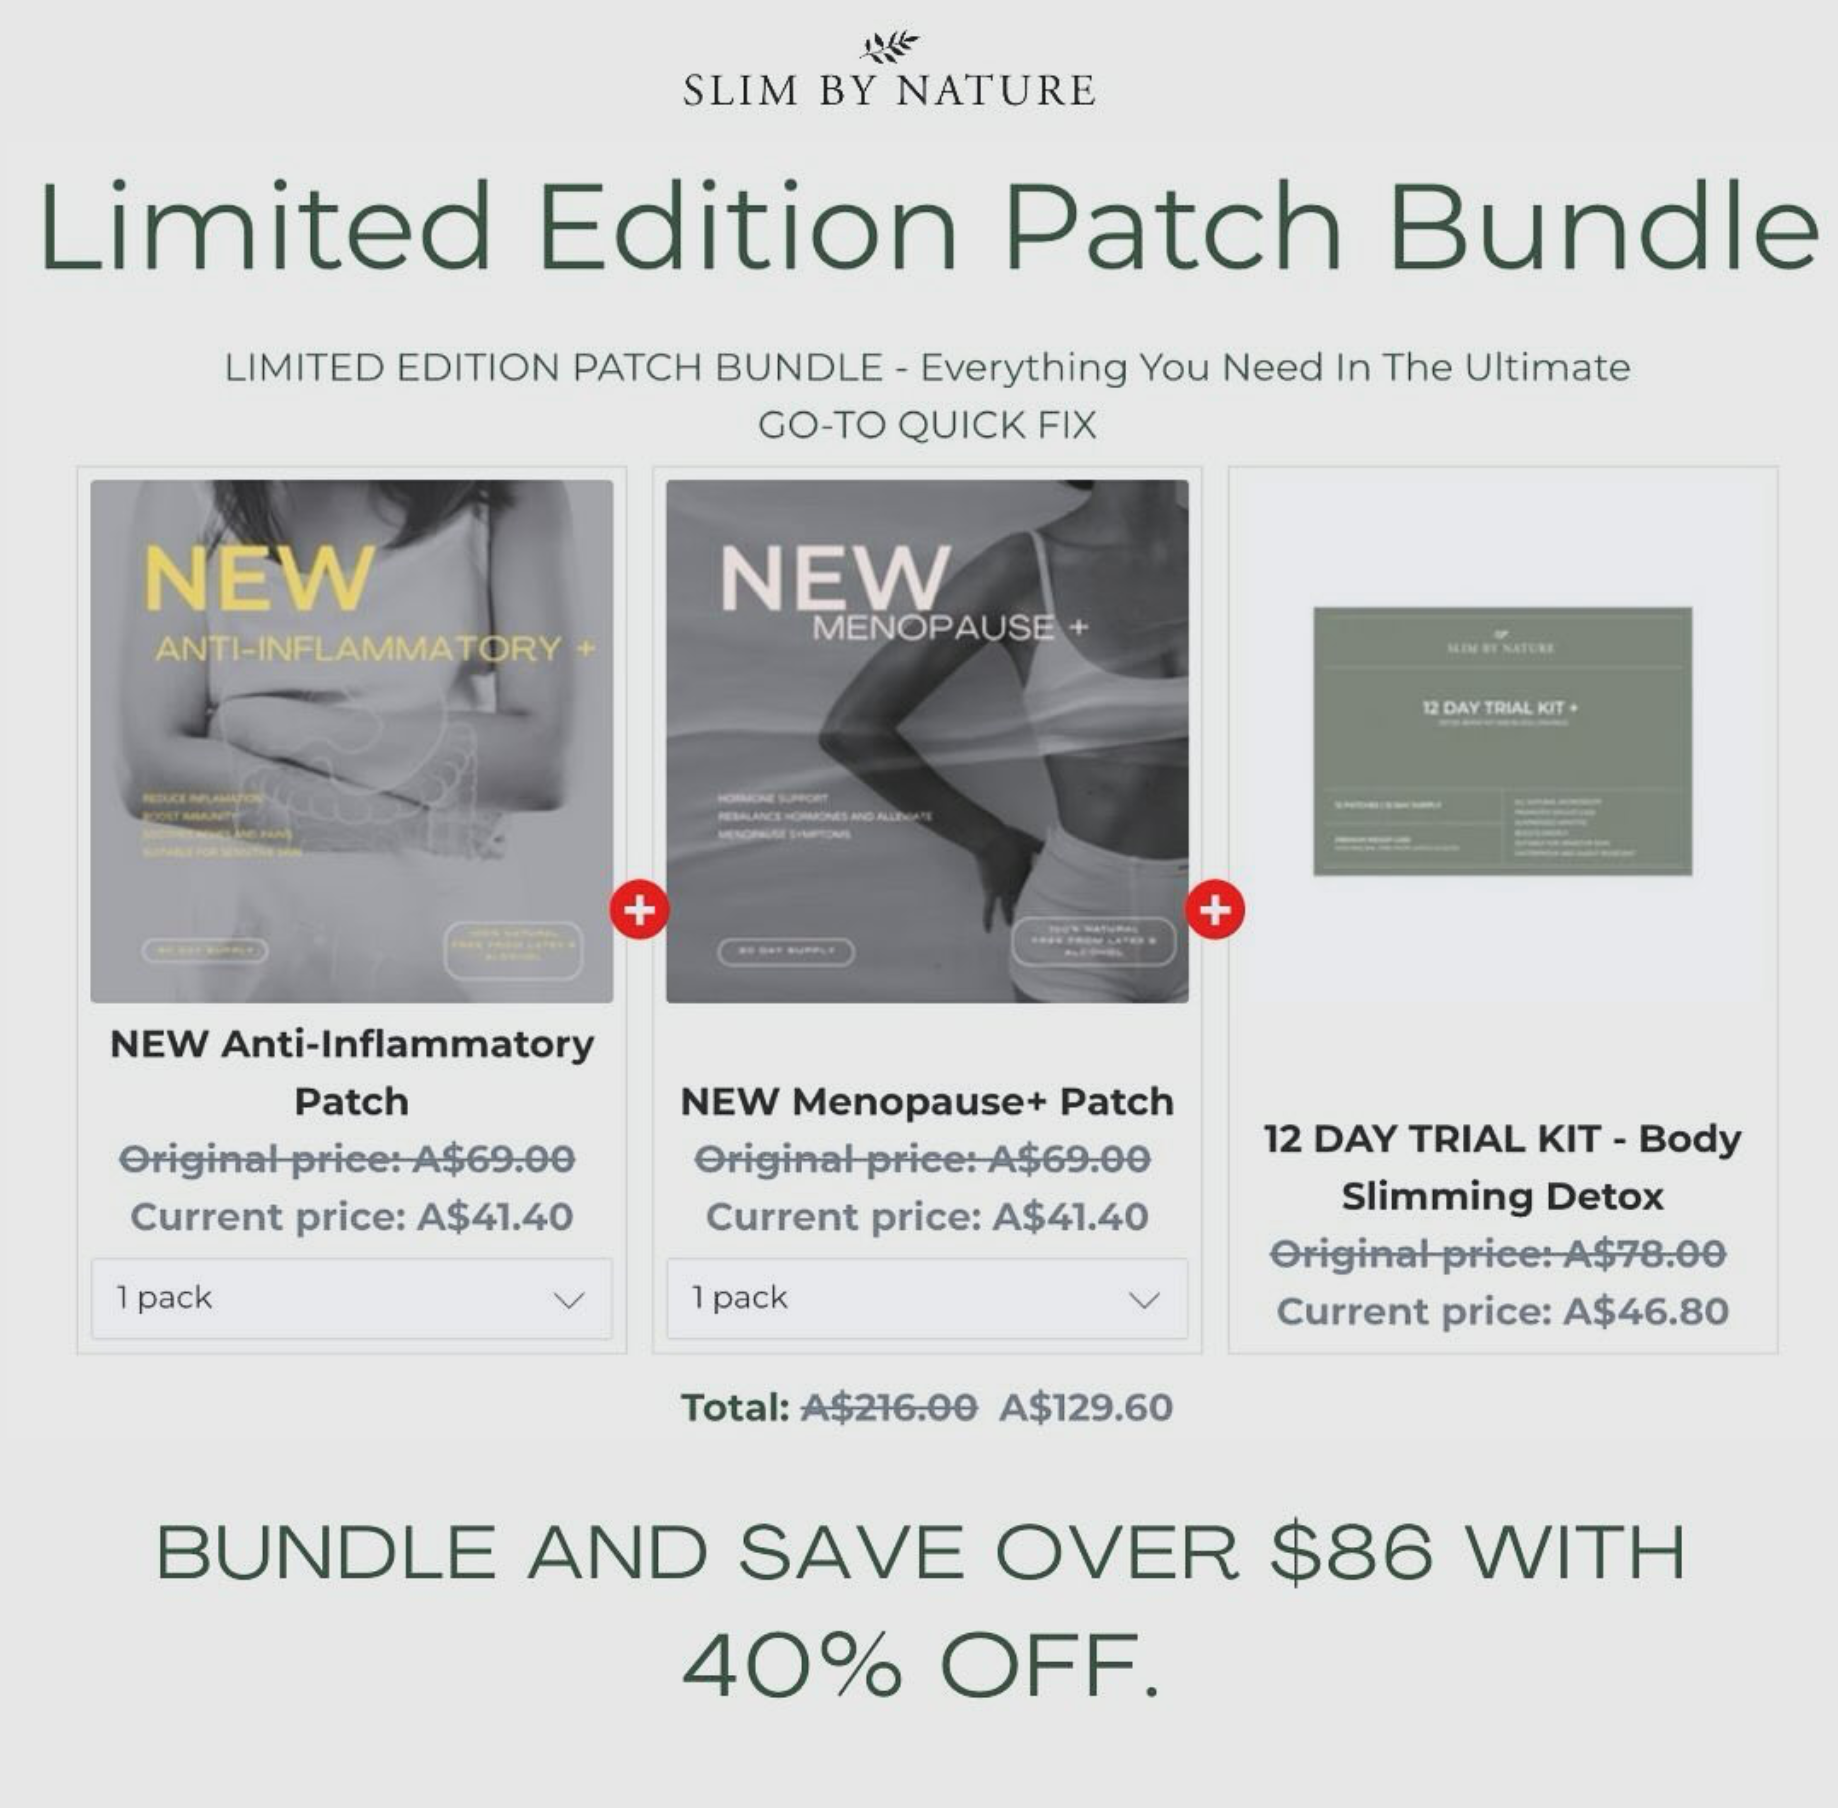 Limited Edition Patch Bundle